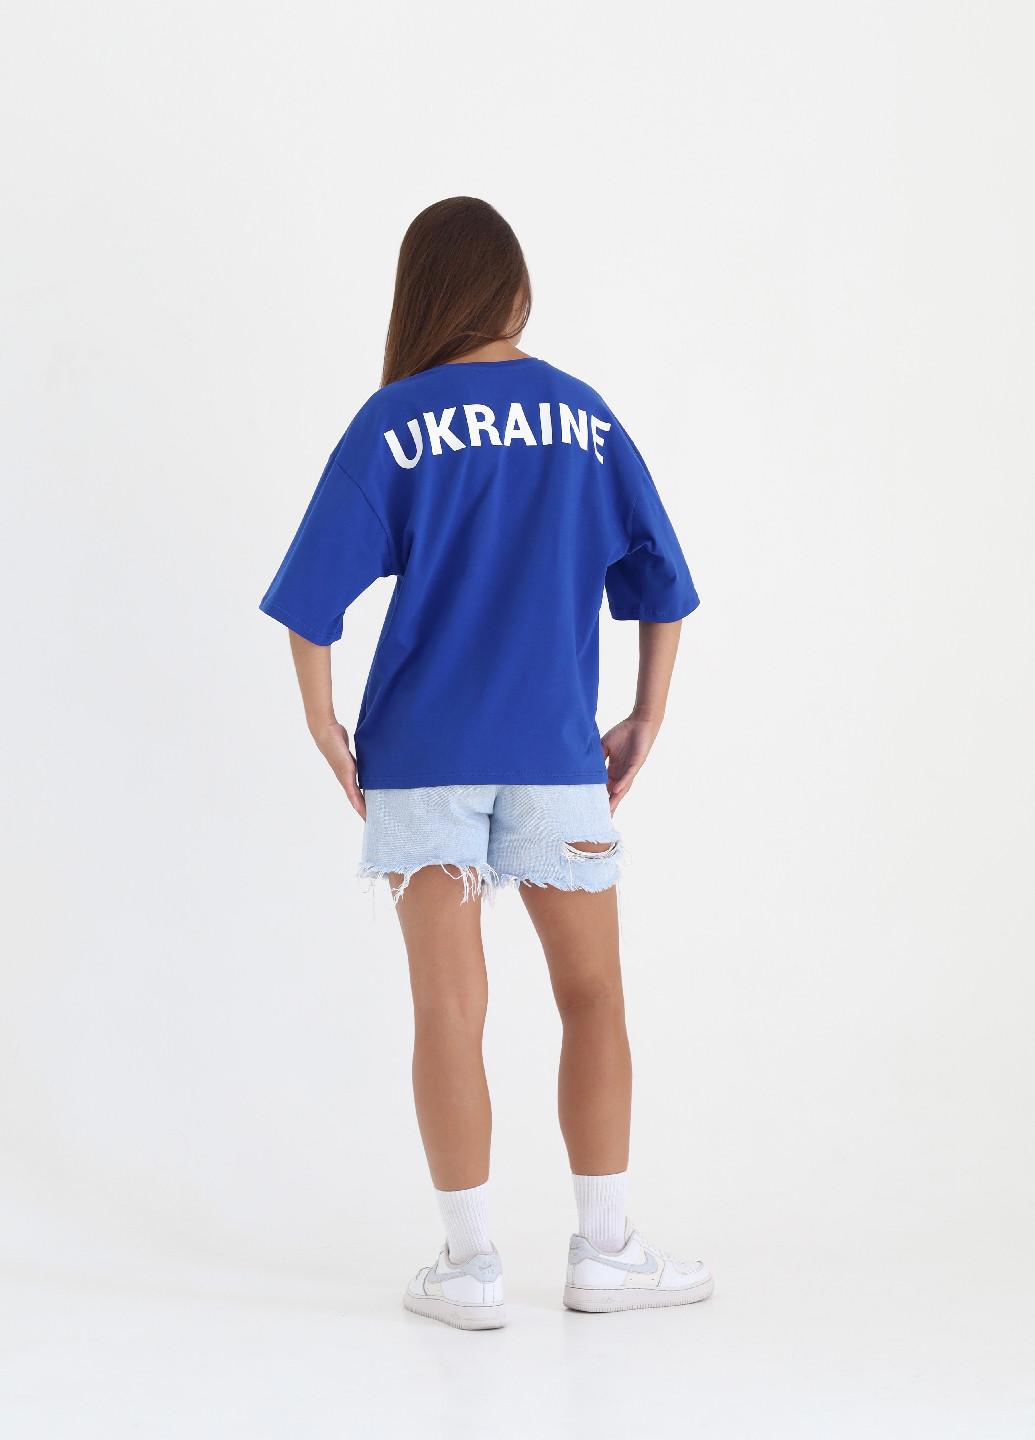 Синяя всесезон футболка "ukraine" синего цвета Rebellis